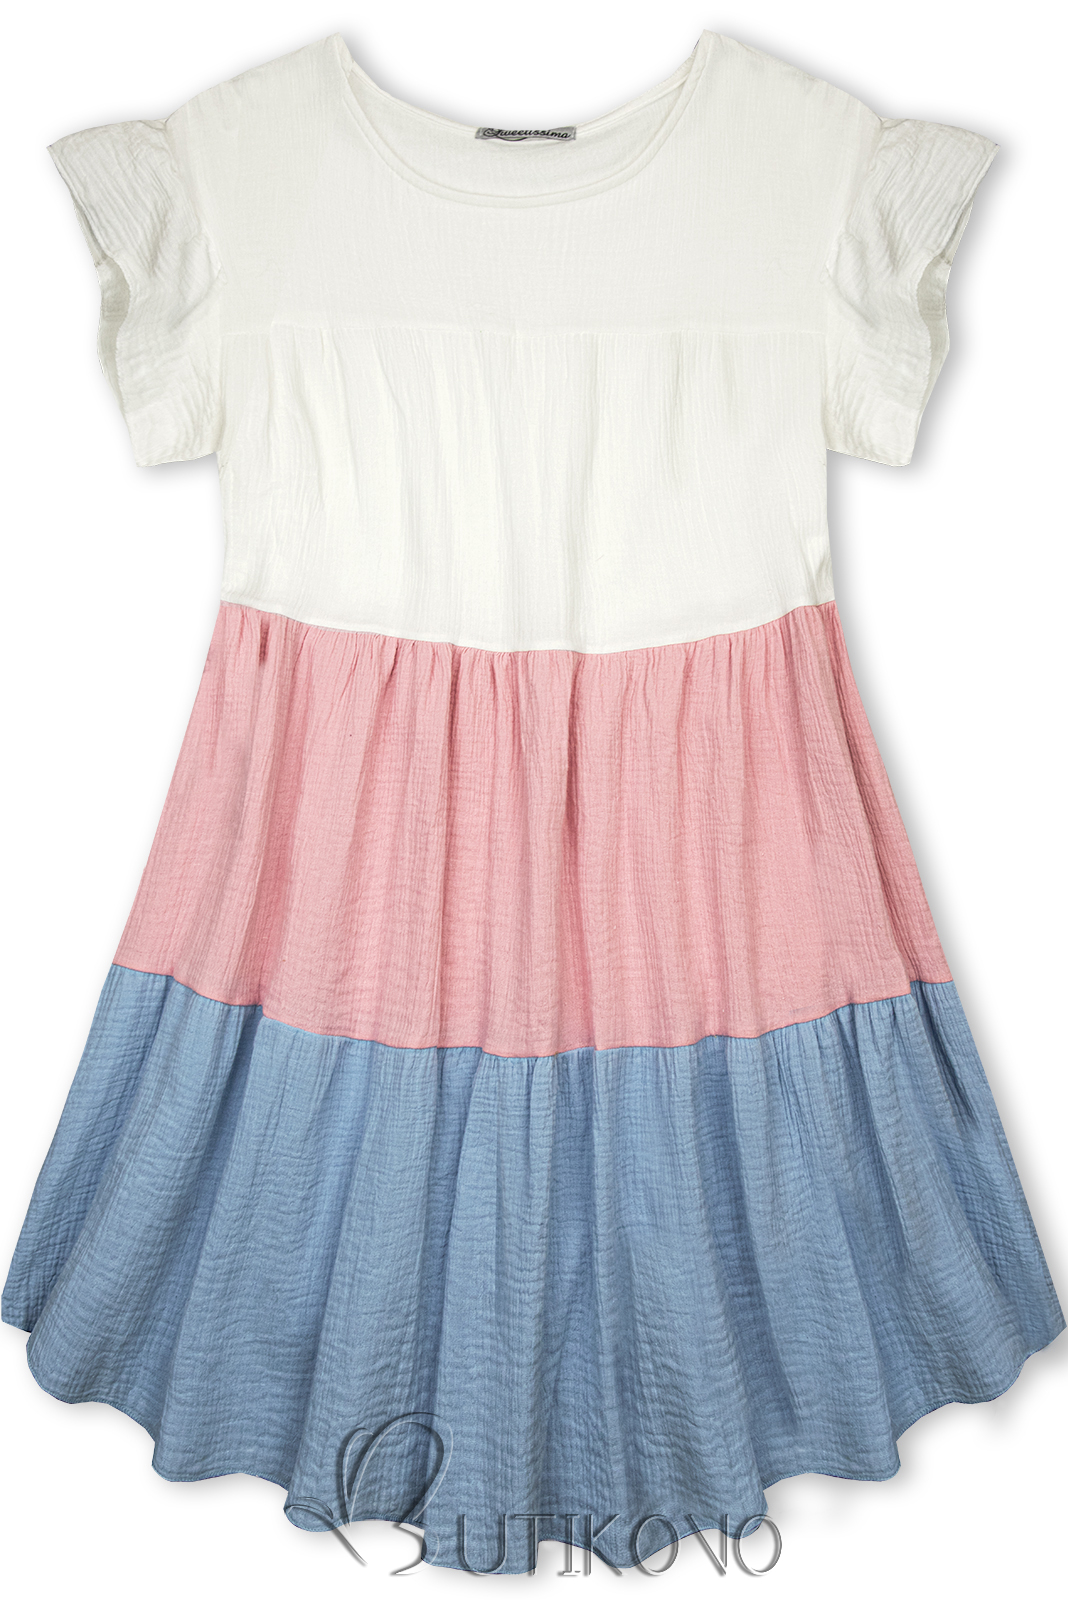 Bavlnené šaty biela/ružová/modrá